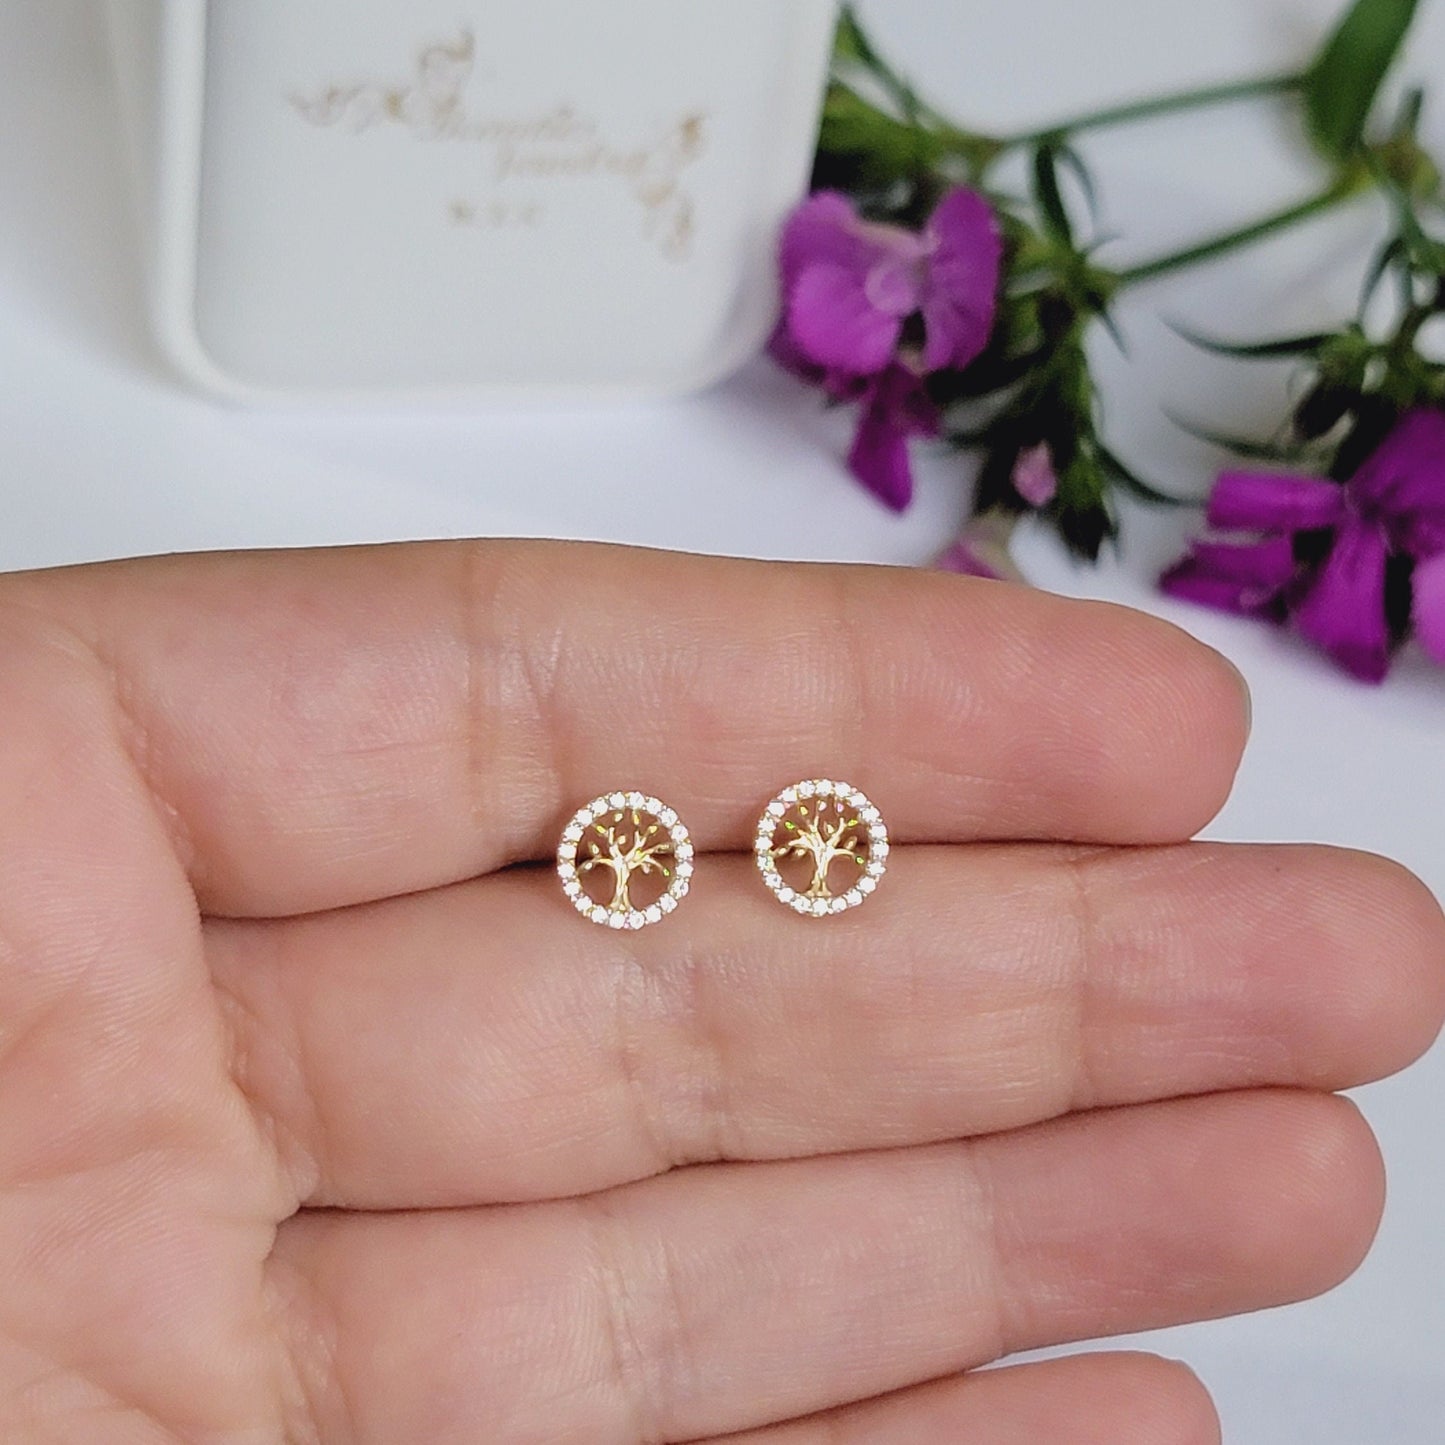 Tree of Life Earrings in 14k Solid Gold, Diamond Tree Earrings, Minimalist Earrings, Dainty Studs, Nature Earrings, Family Tree Earrings